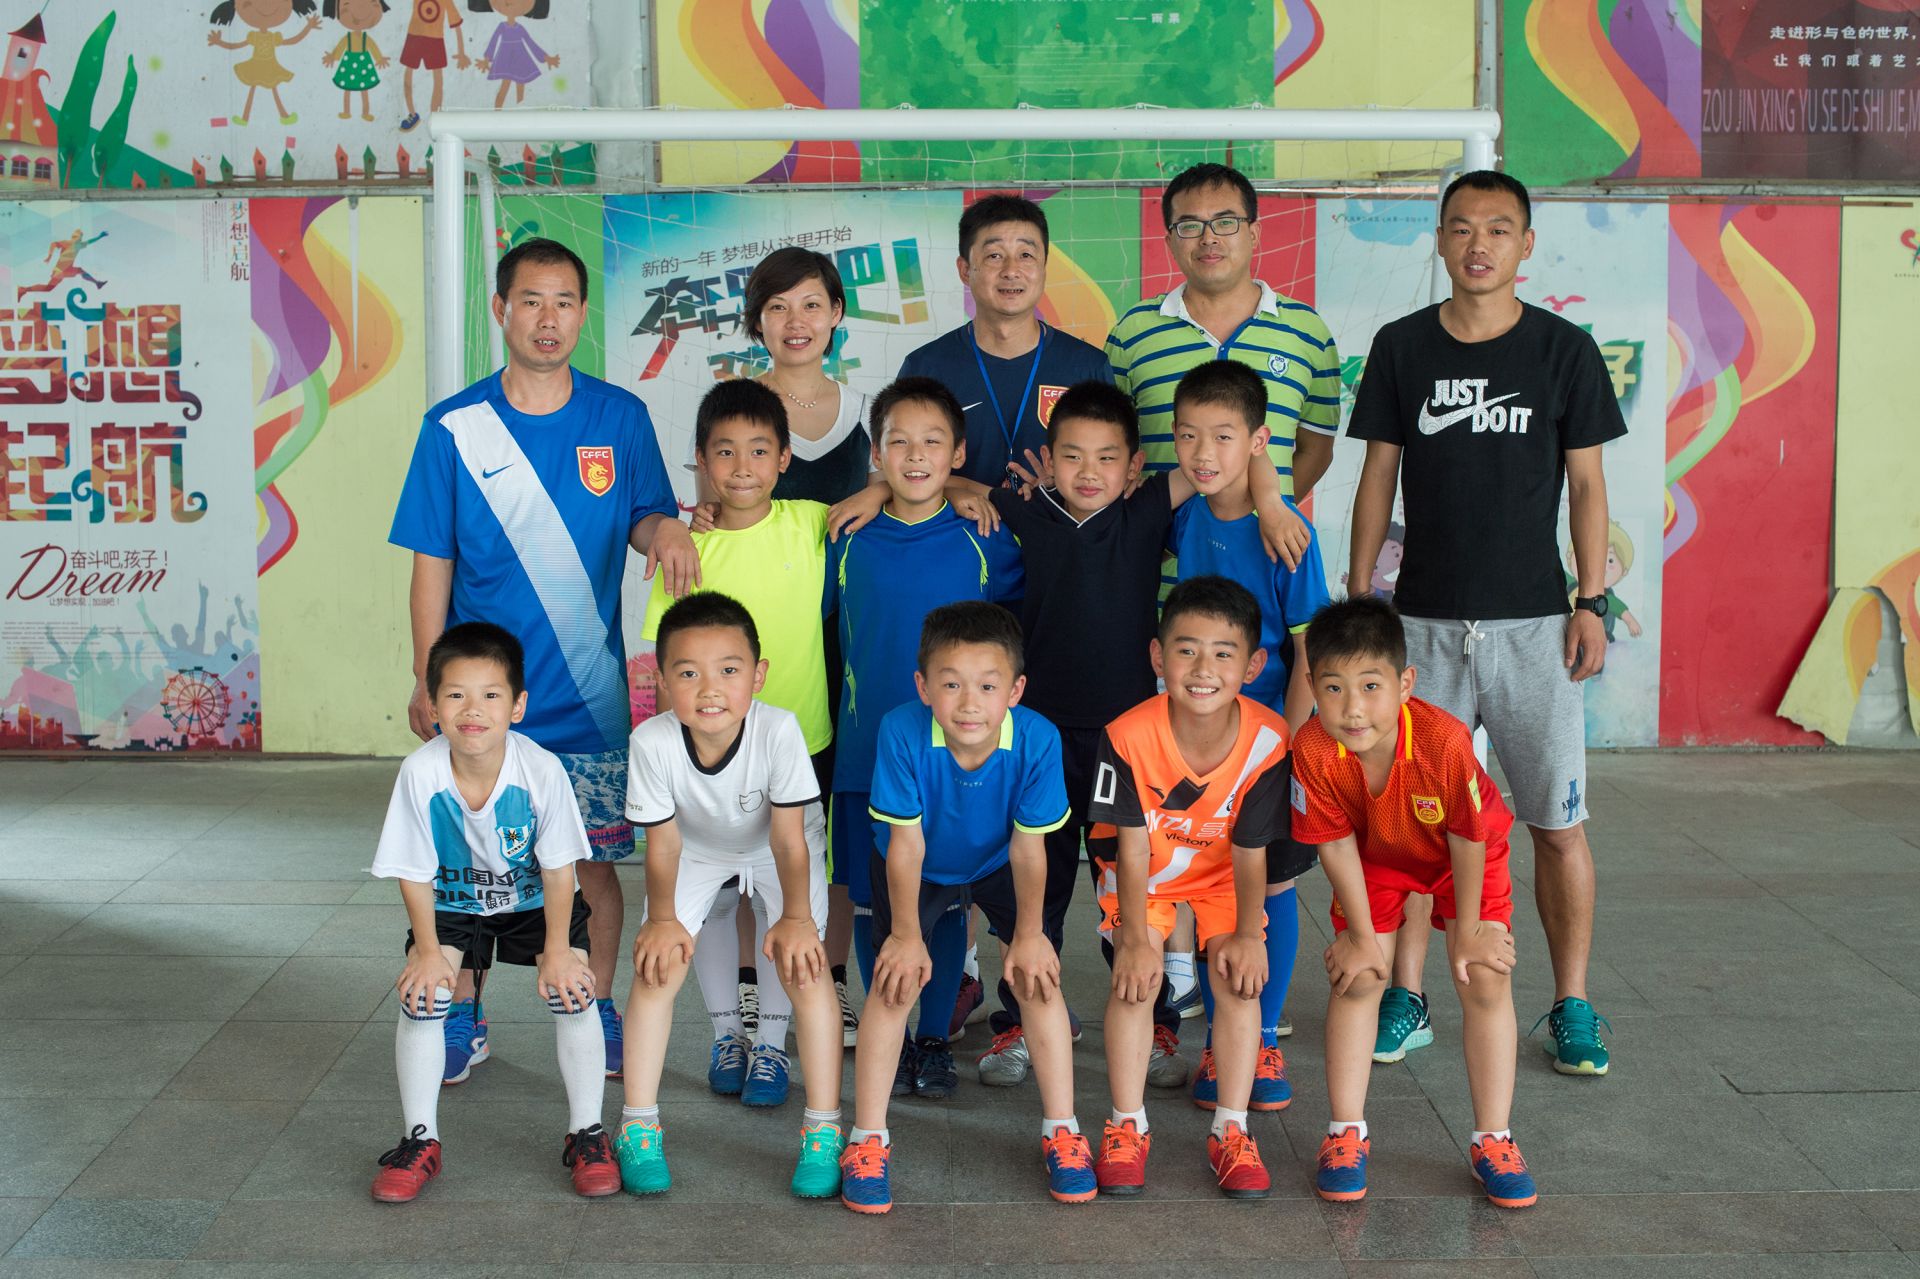 大兴第一实验小学有个足球夏令营让学生们免费踢足球